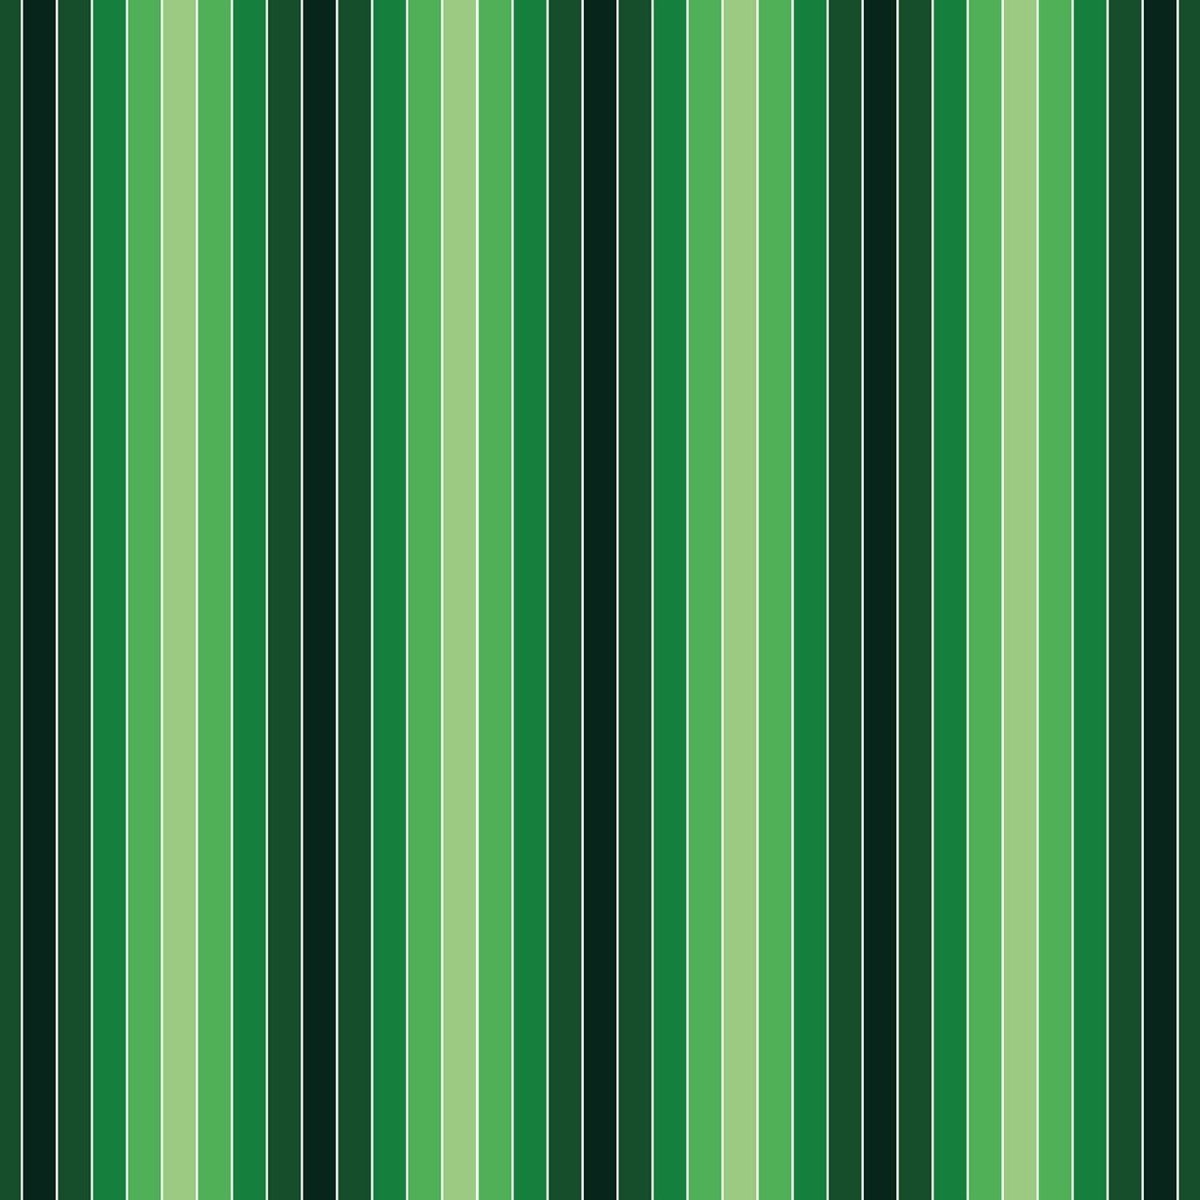 Beistelltisch Frisches Grün Muster M0090 entdecken - Bild 2